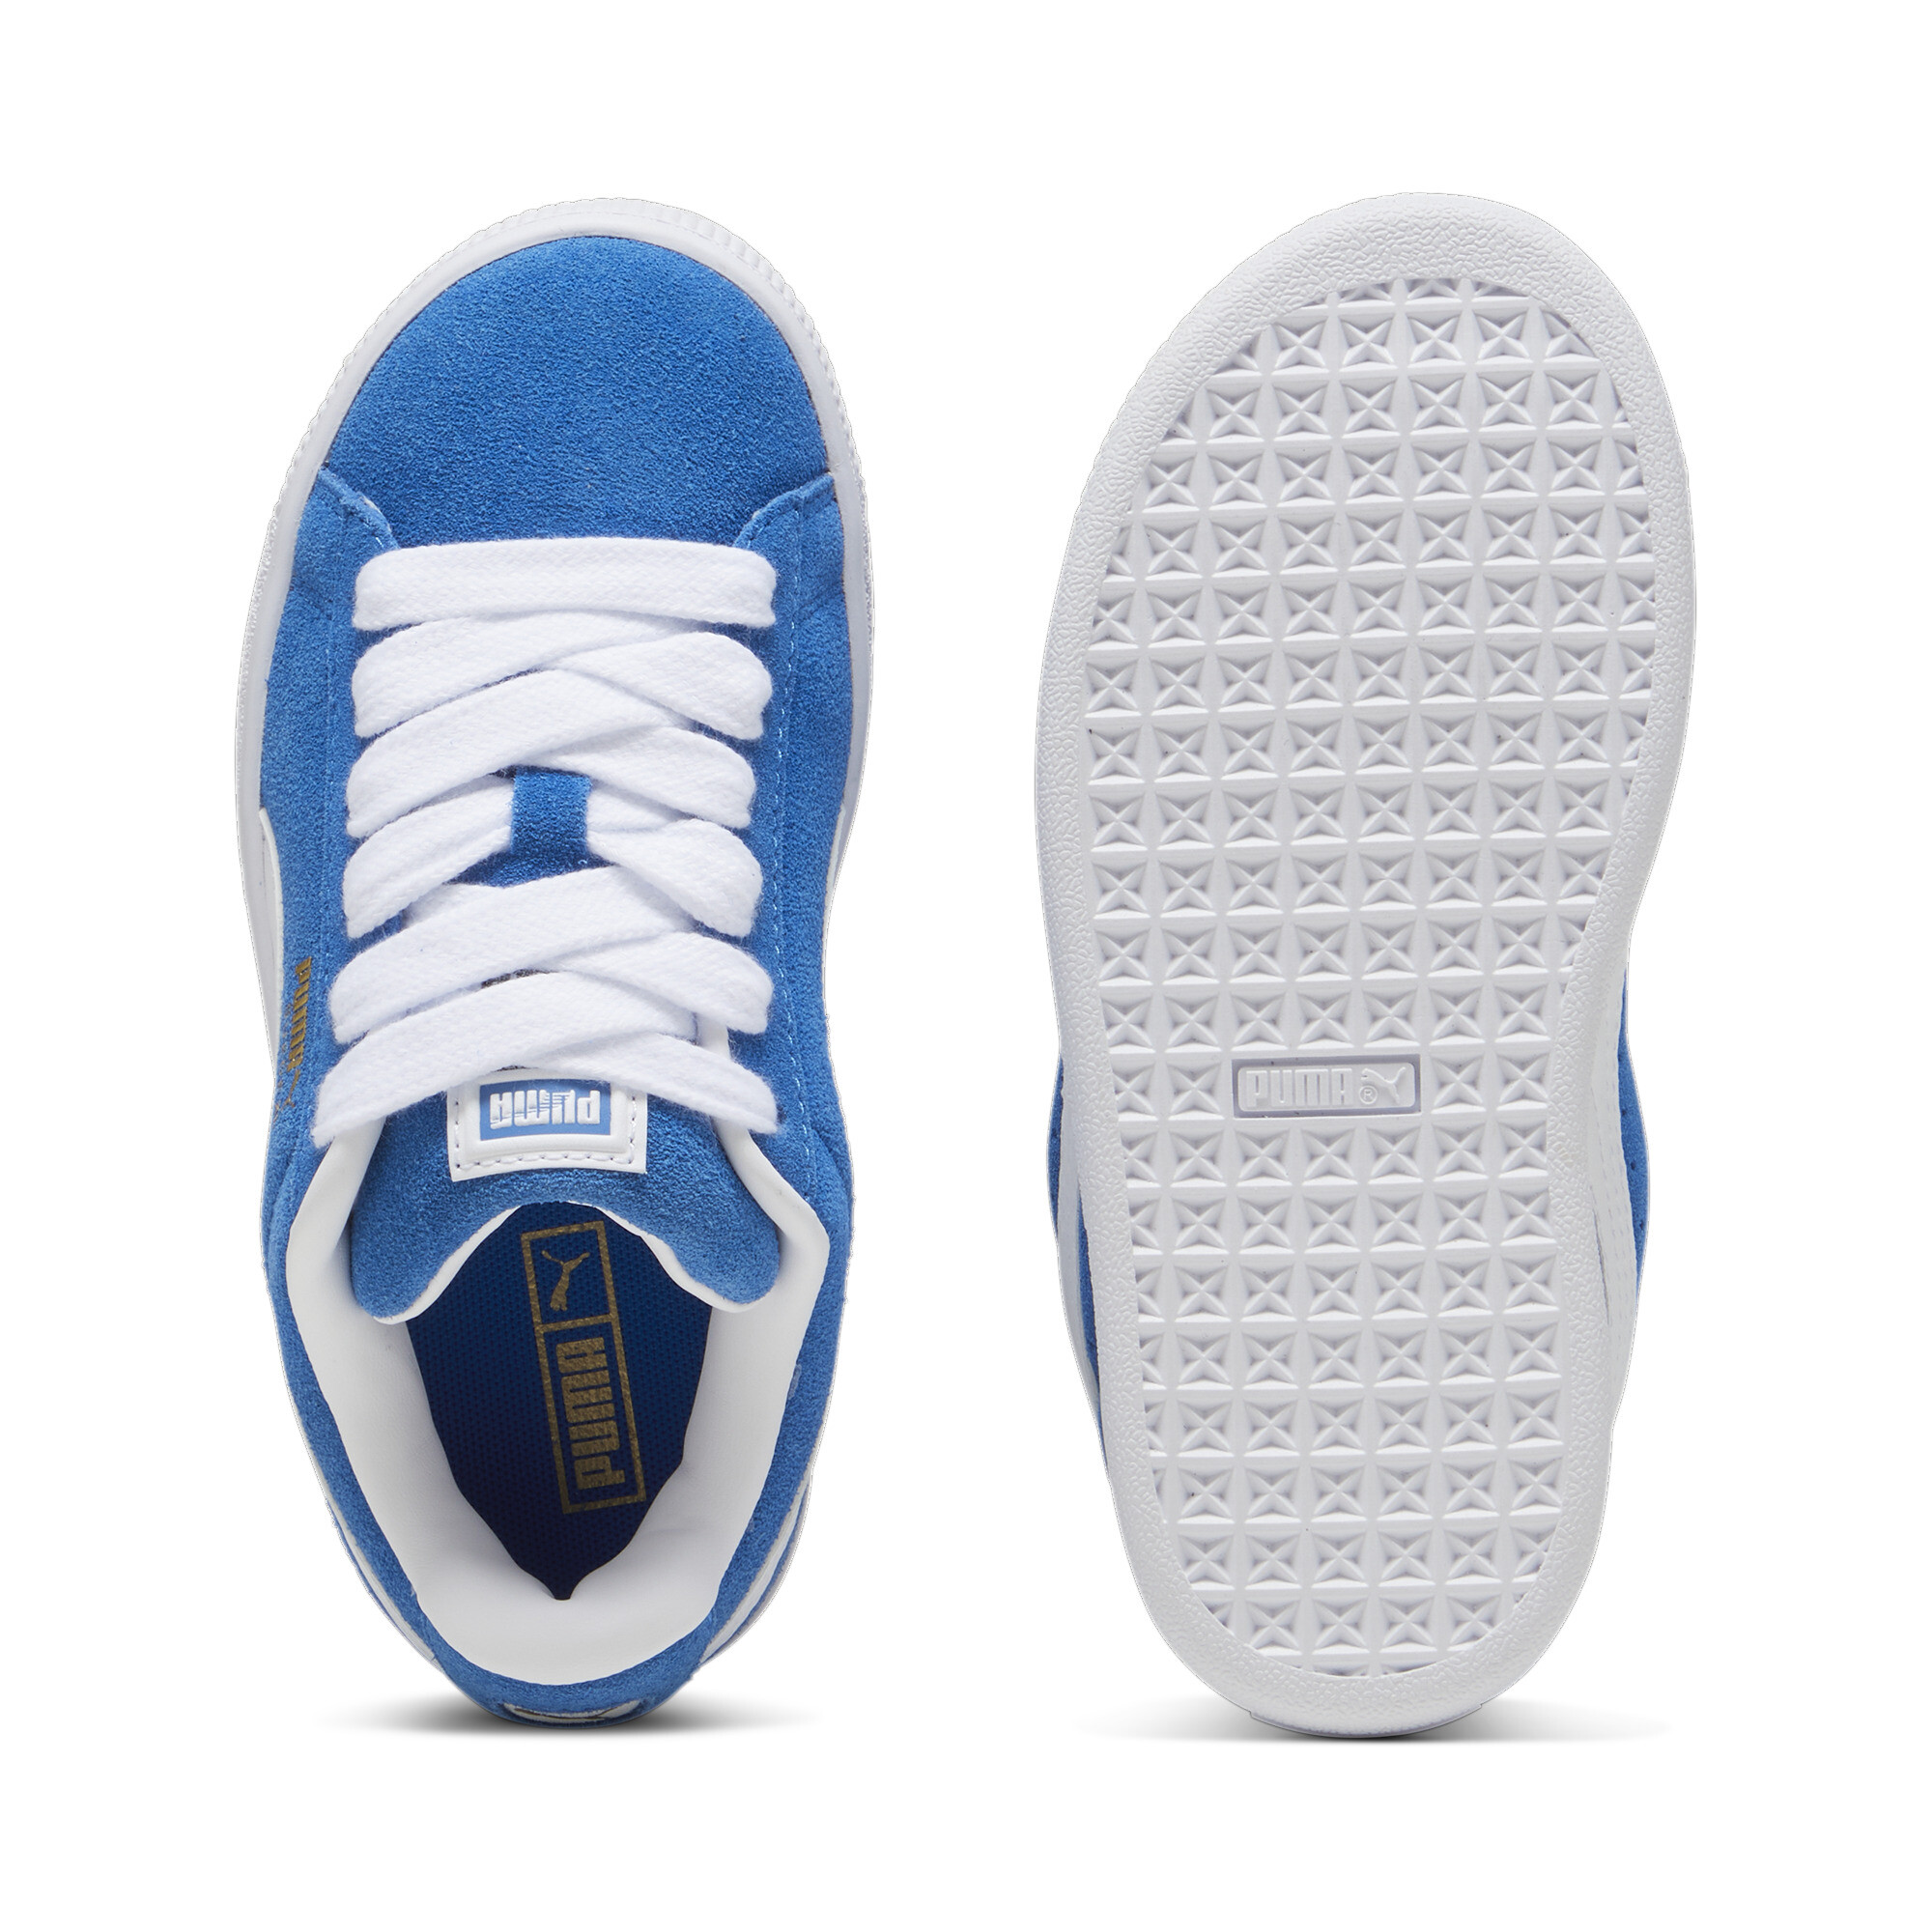 Kids' PUMA Suede XL Sneakers In 80 - Blue, Size EU 30